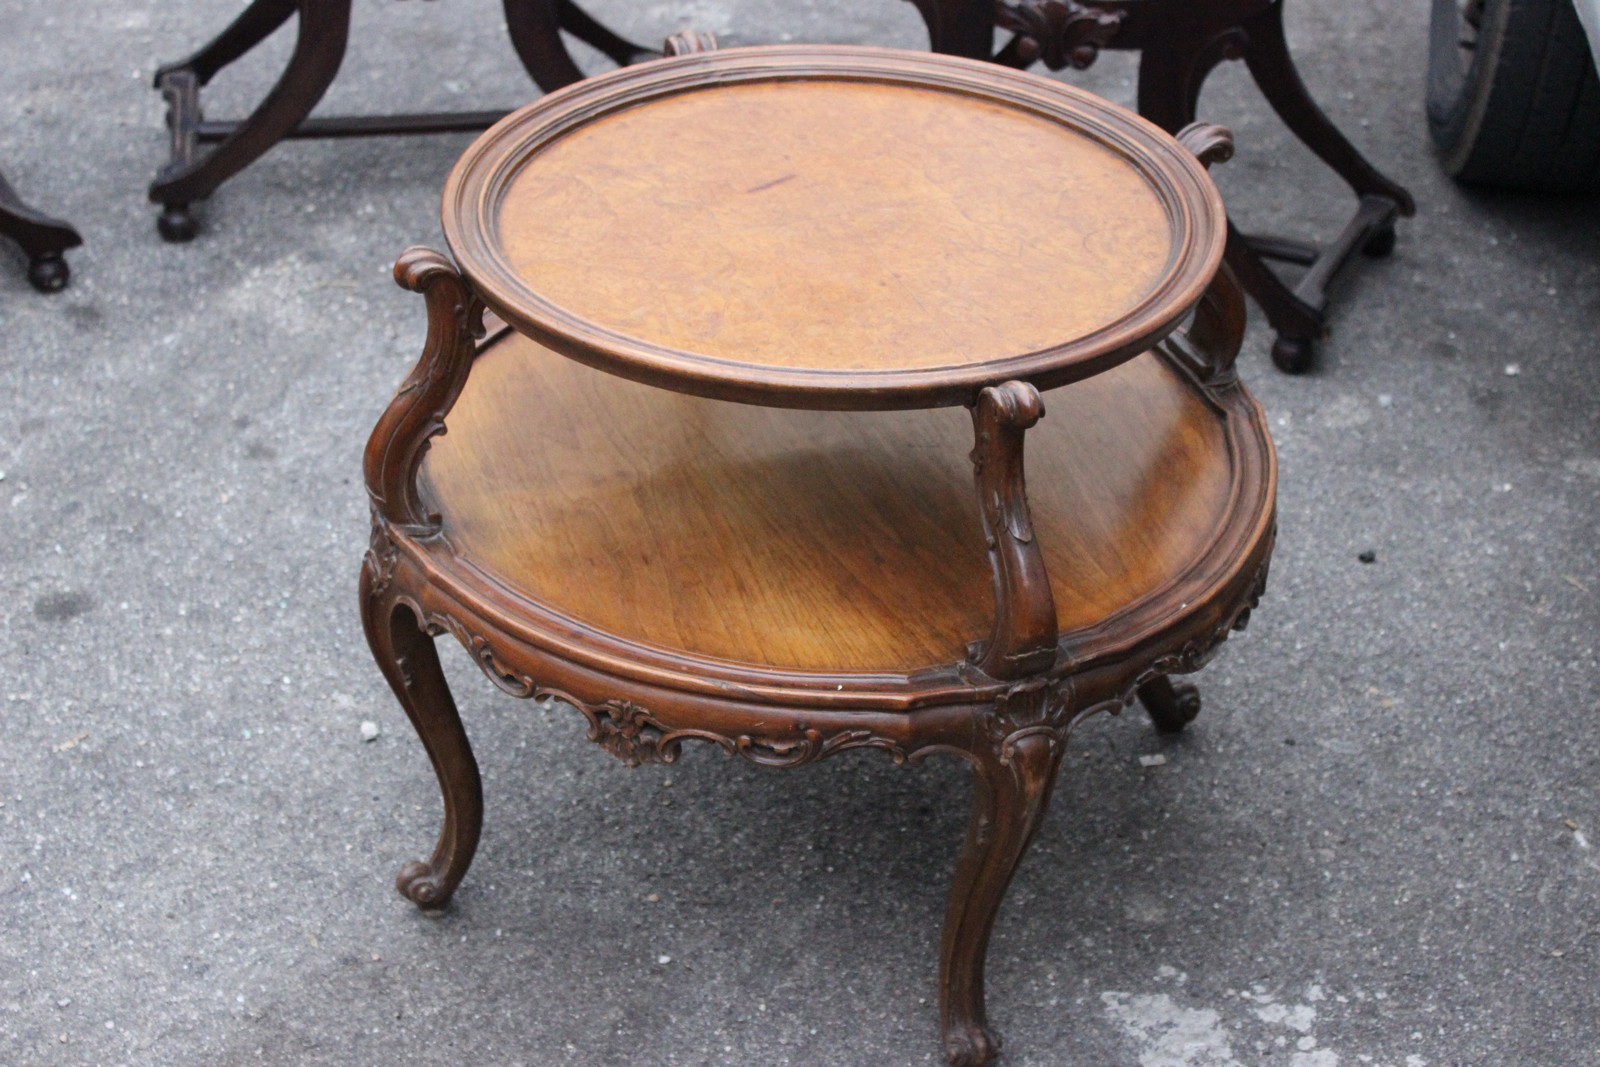 Имя столик. Старинный стол двухъярусный. Кофейный столик рококо. Столик названия. Банкетка дубовая антикварная.